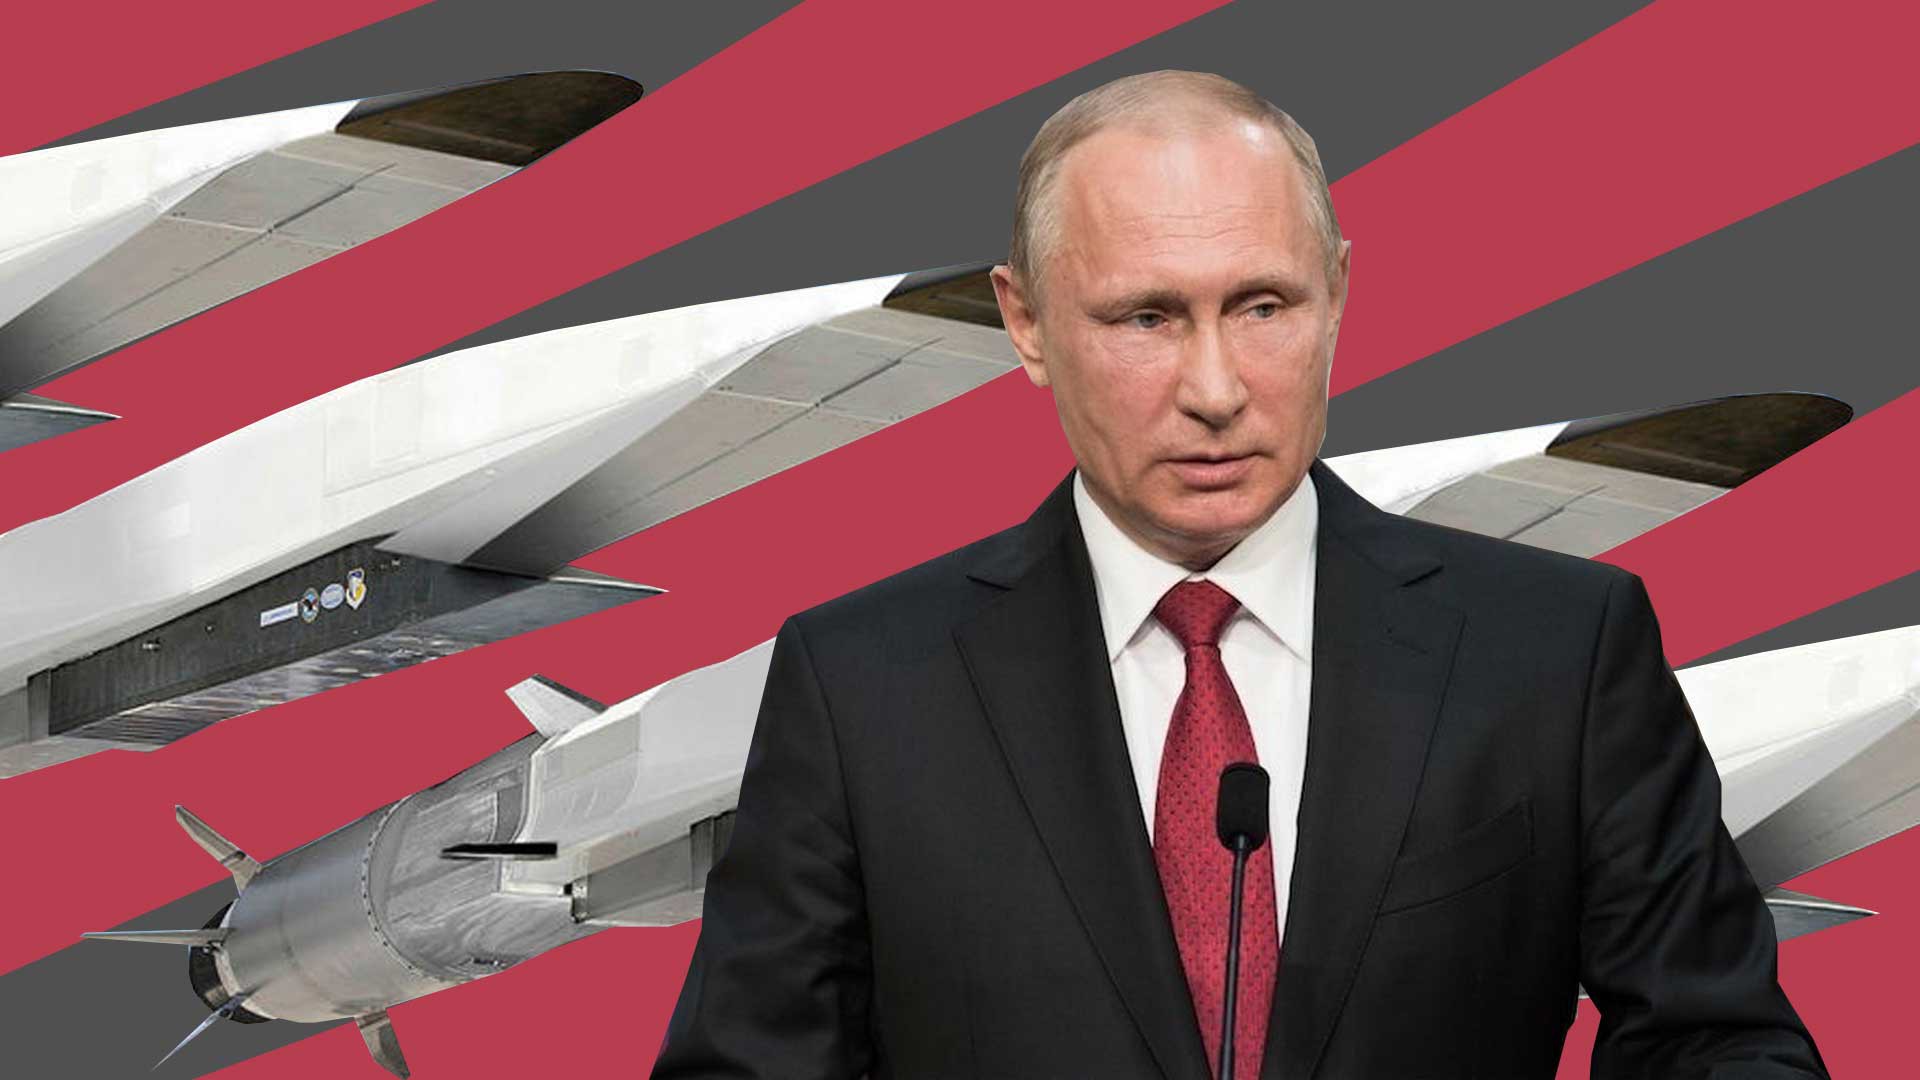 Dailystorm - Путин на военно-морском параде анонсировал появление у флота гиперзвукового оружия